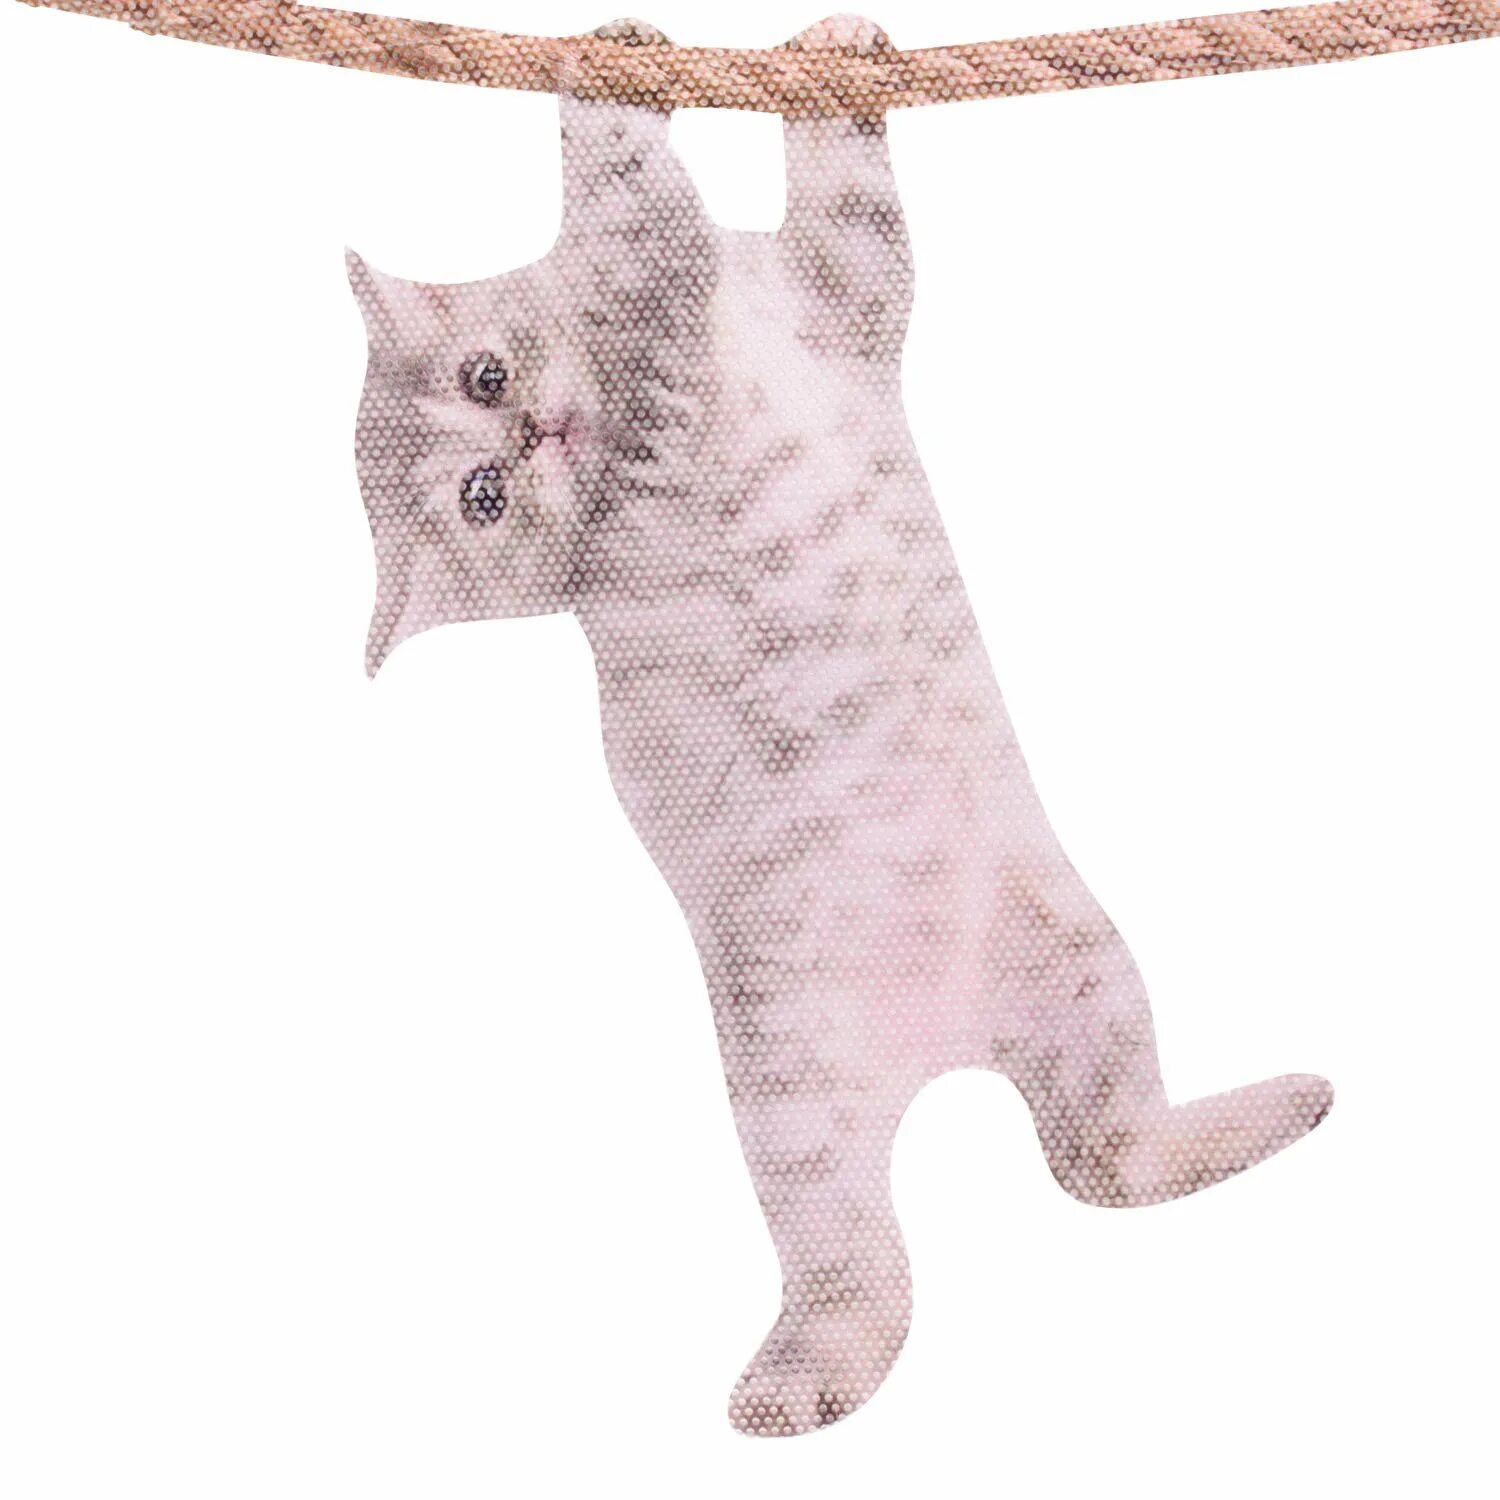 Повешенные кошки. Кот hang in thaere :d. Картинка с котиком hang up.